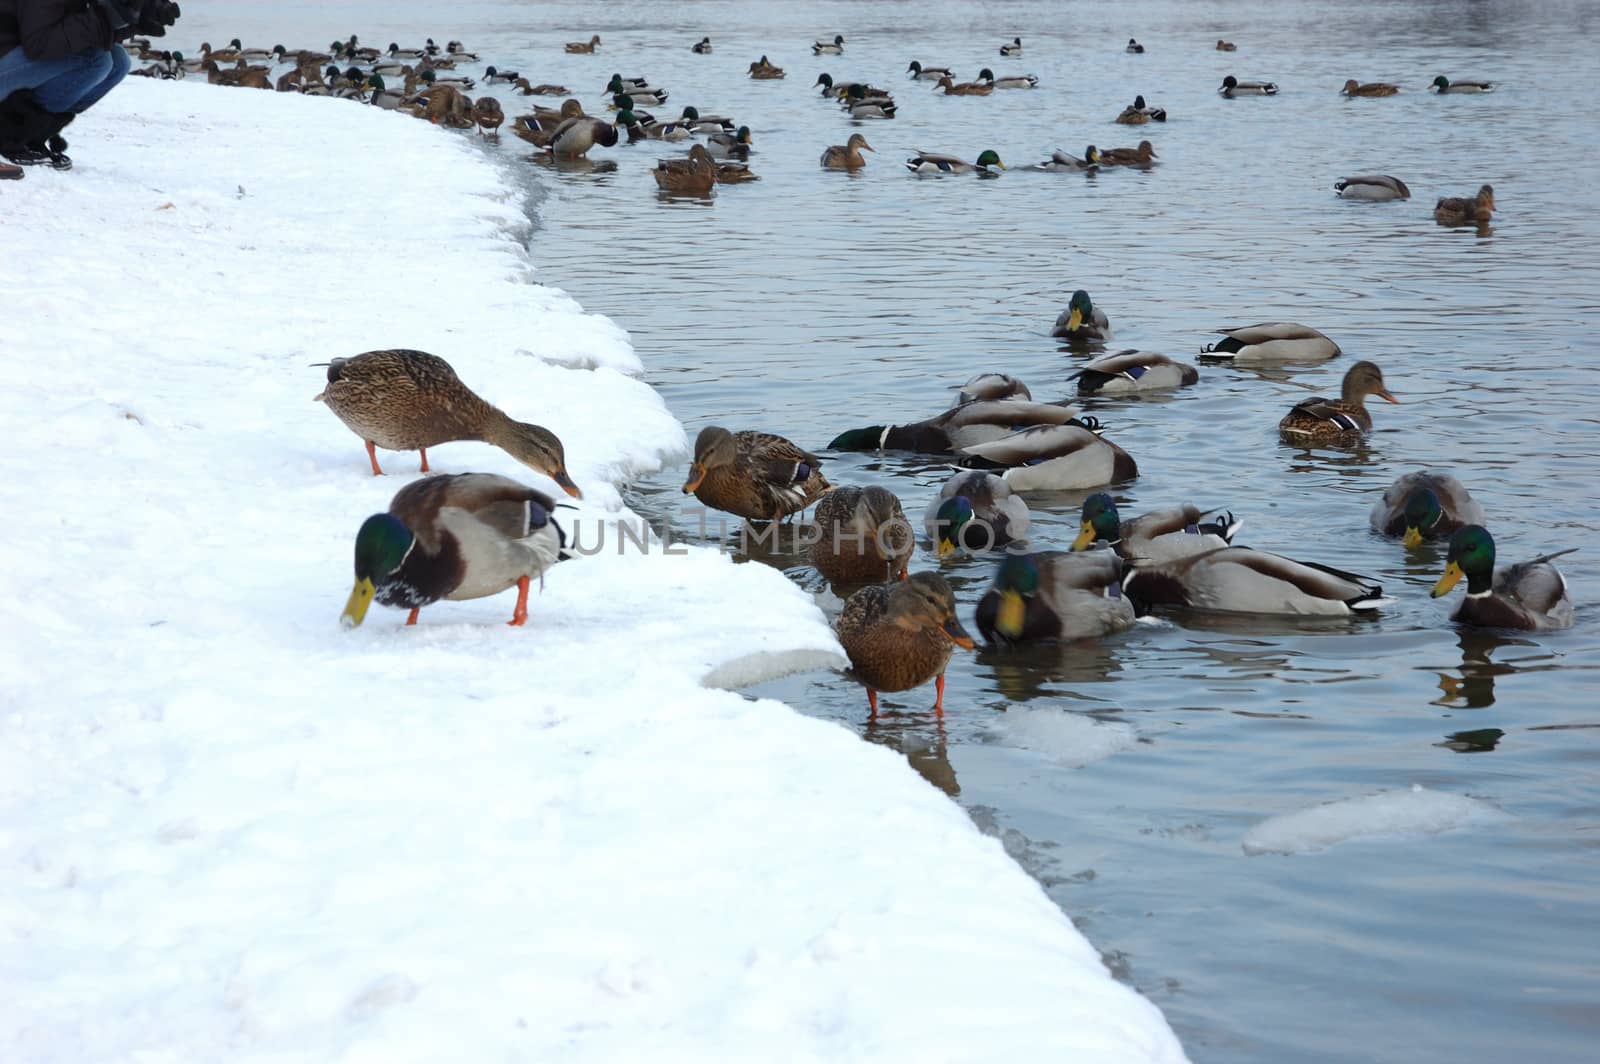 Ducks in winter river by wander